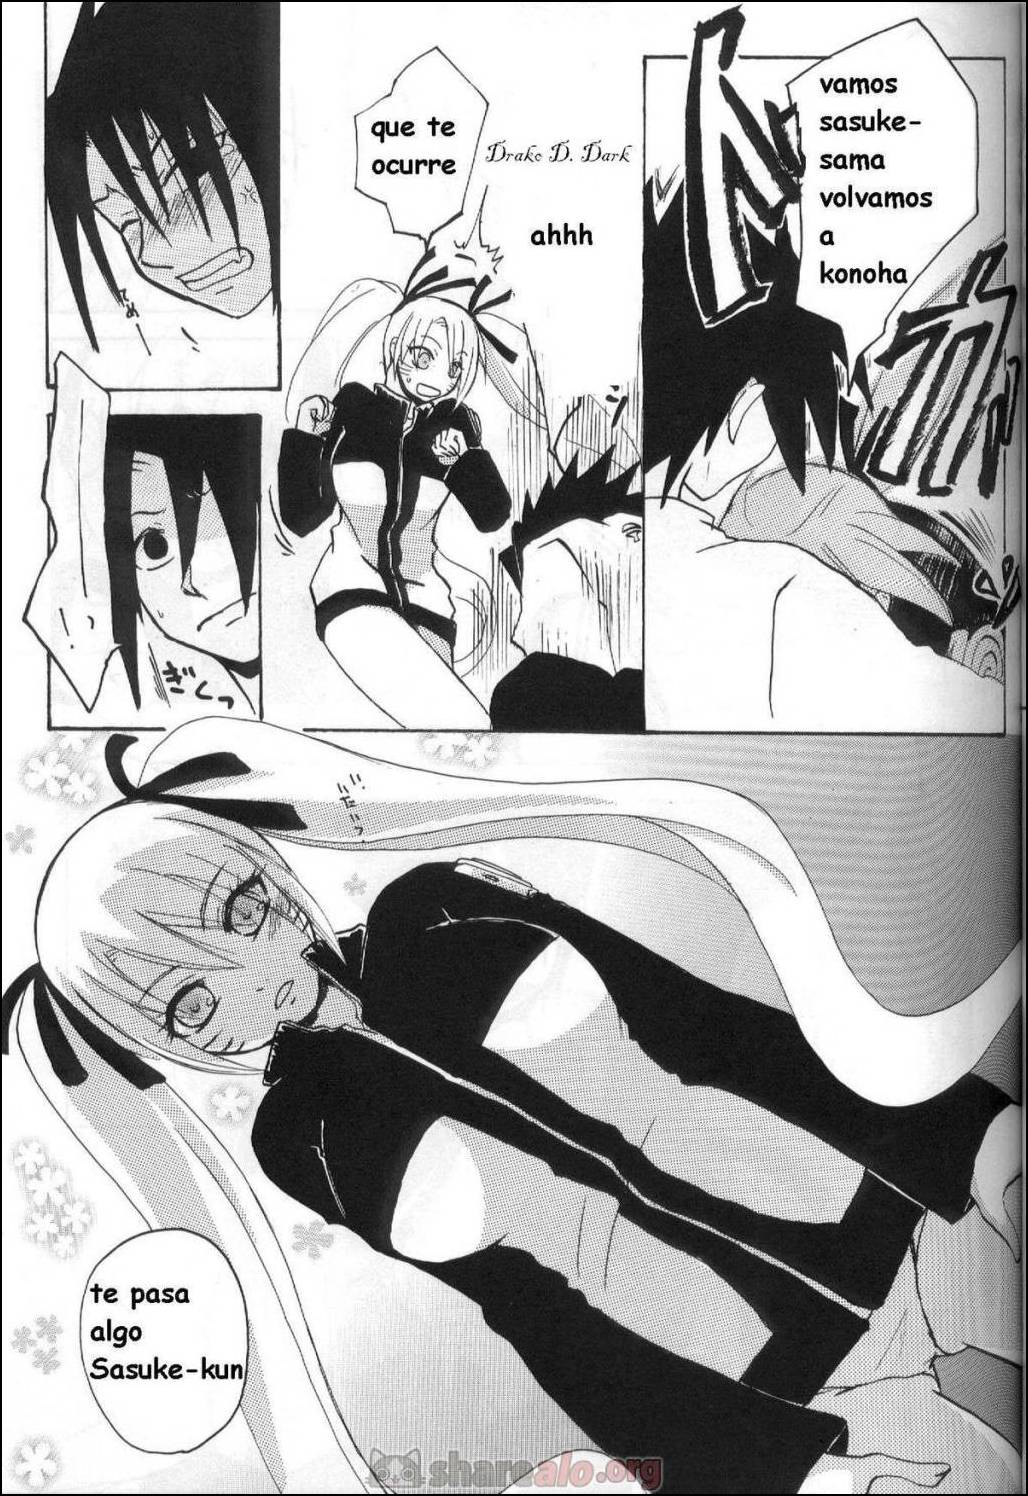 La Persuación de Naruto (Naruko y Sasuke Uchiha Follando) - 6 - Comics Porno - Hentai Manga - Cartoon XXX